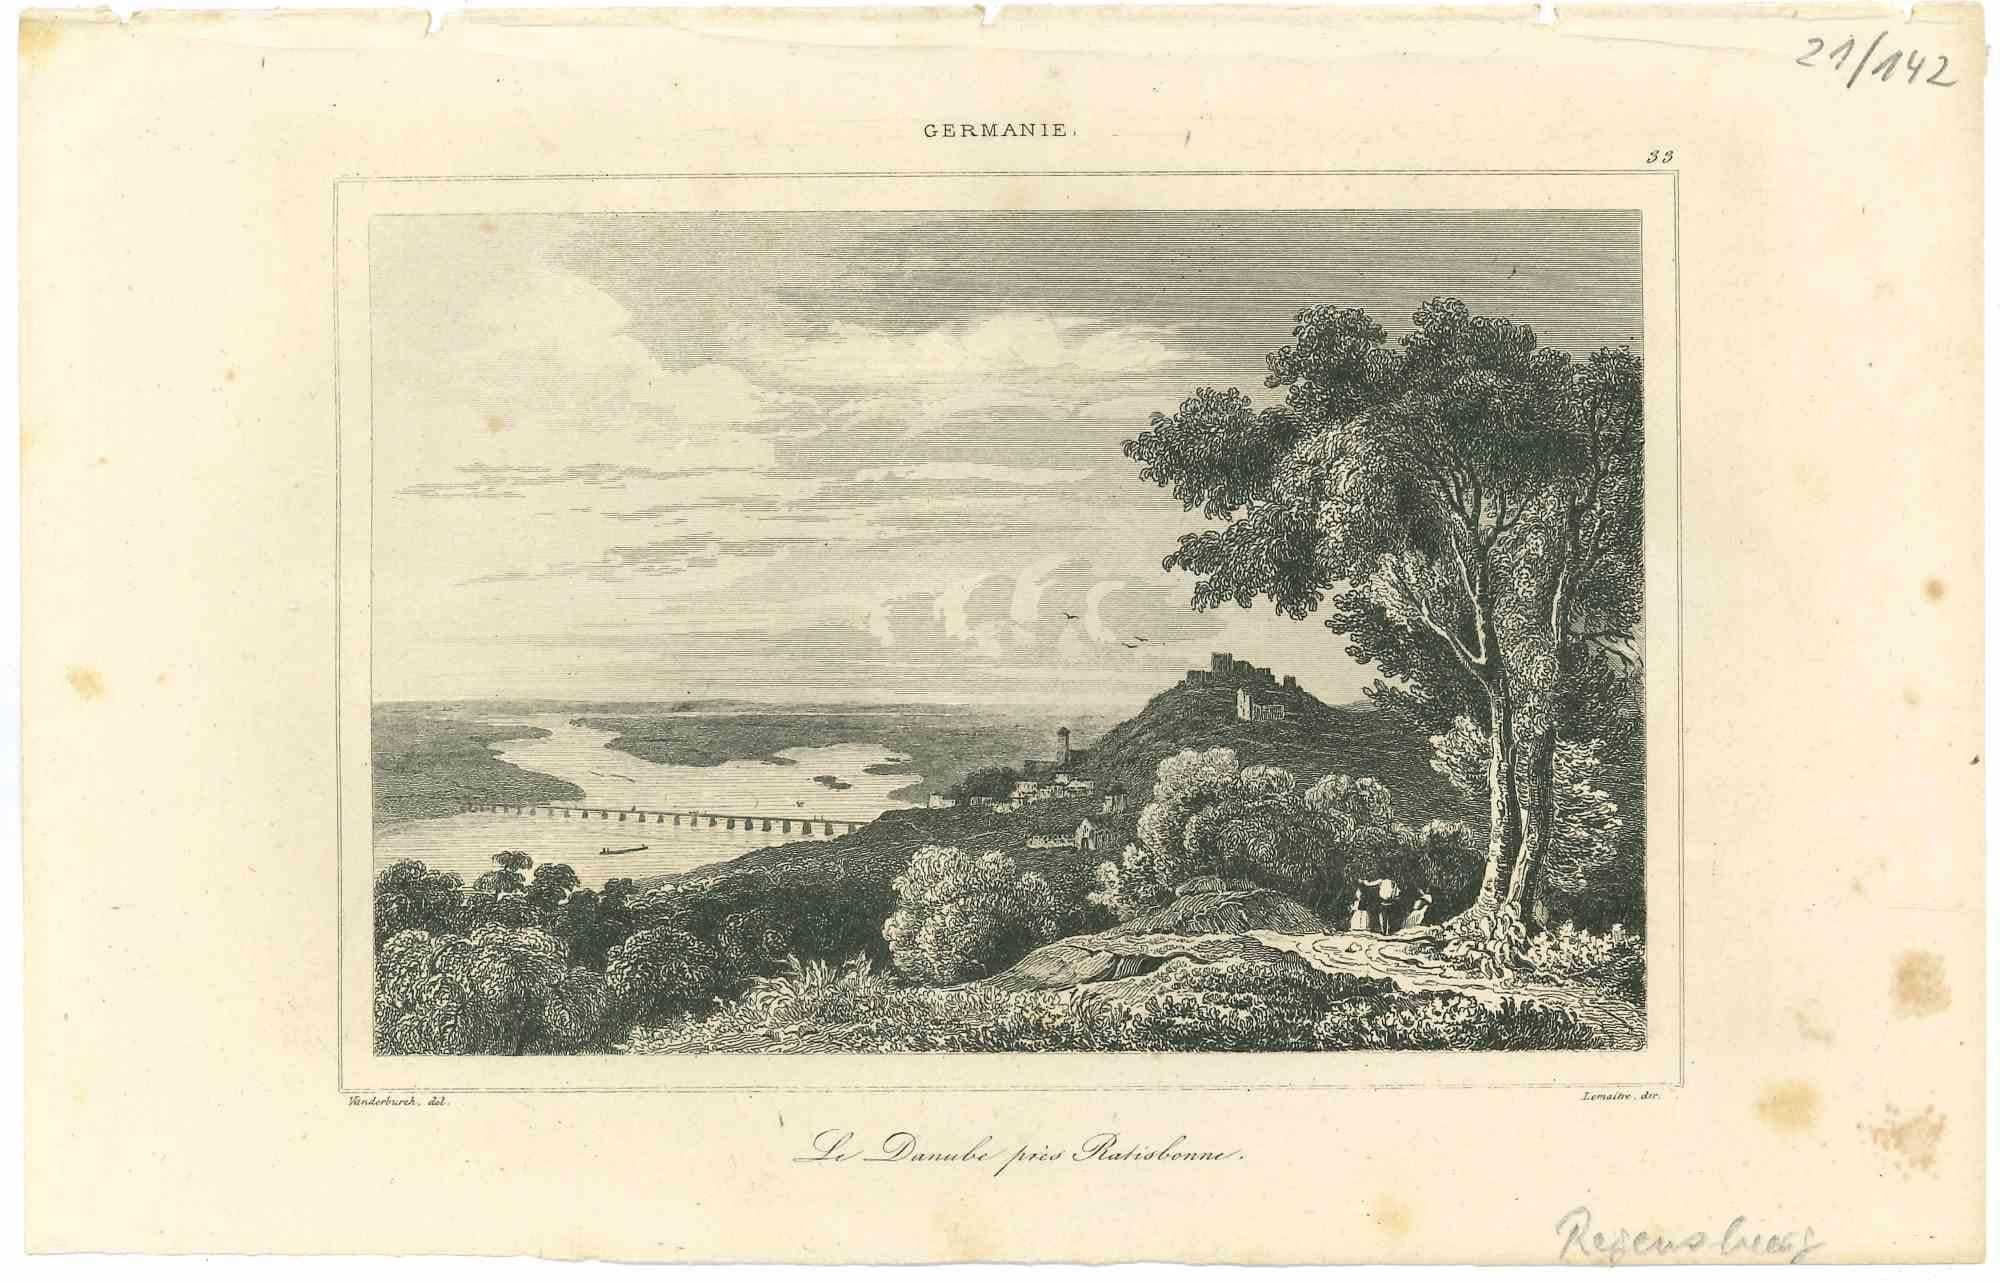 Unknown Landscape Print - Le Danube près Ratisbonne - Original Lithograph - Mid 19th Century